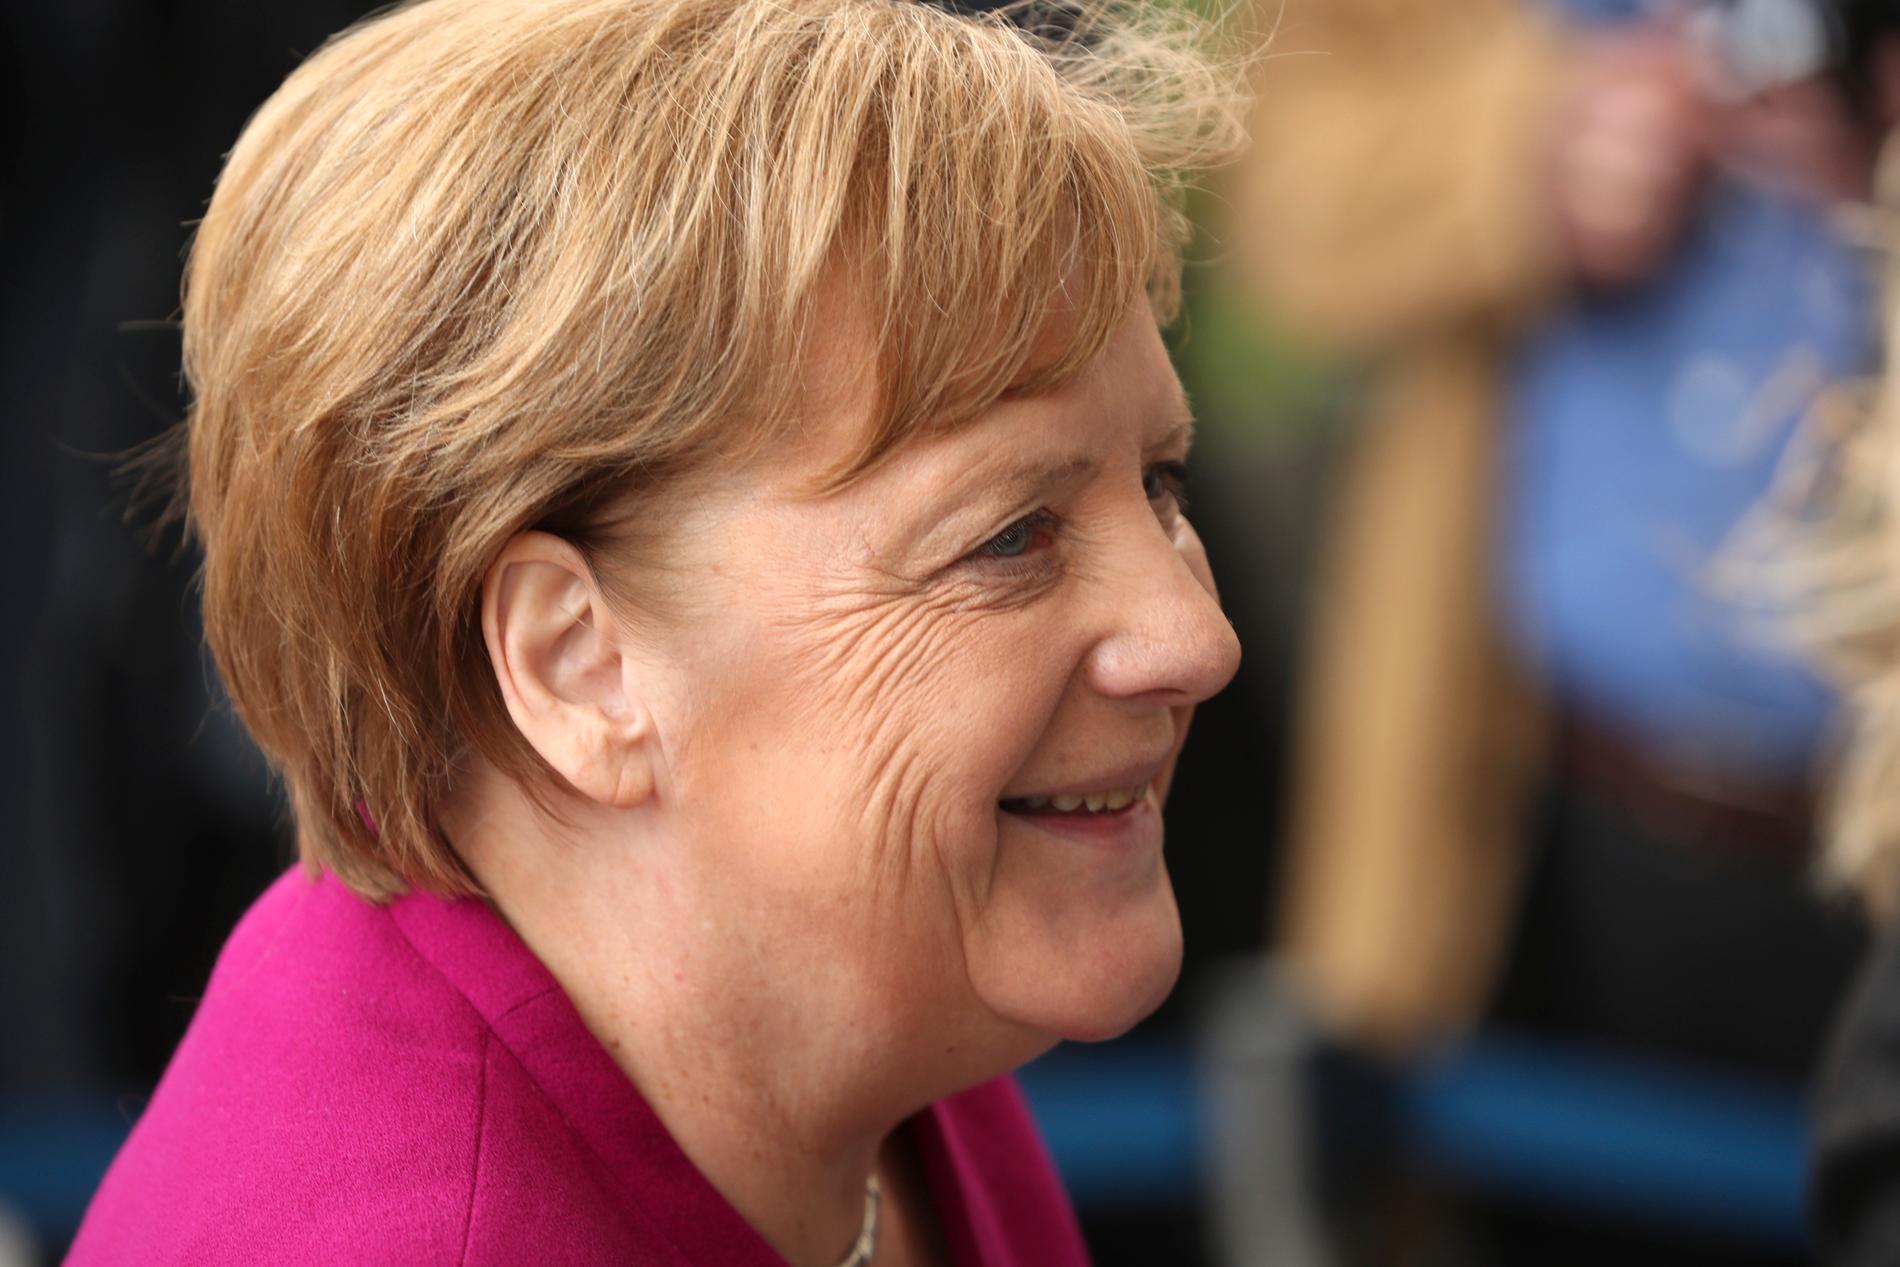 Tysklands förbundskansler Angela Merkel stöder landsmannen Manfred Weber i kampen om vem som ska bli ny ordförande för EU-kommissionen.